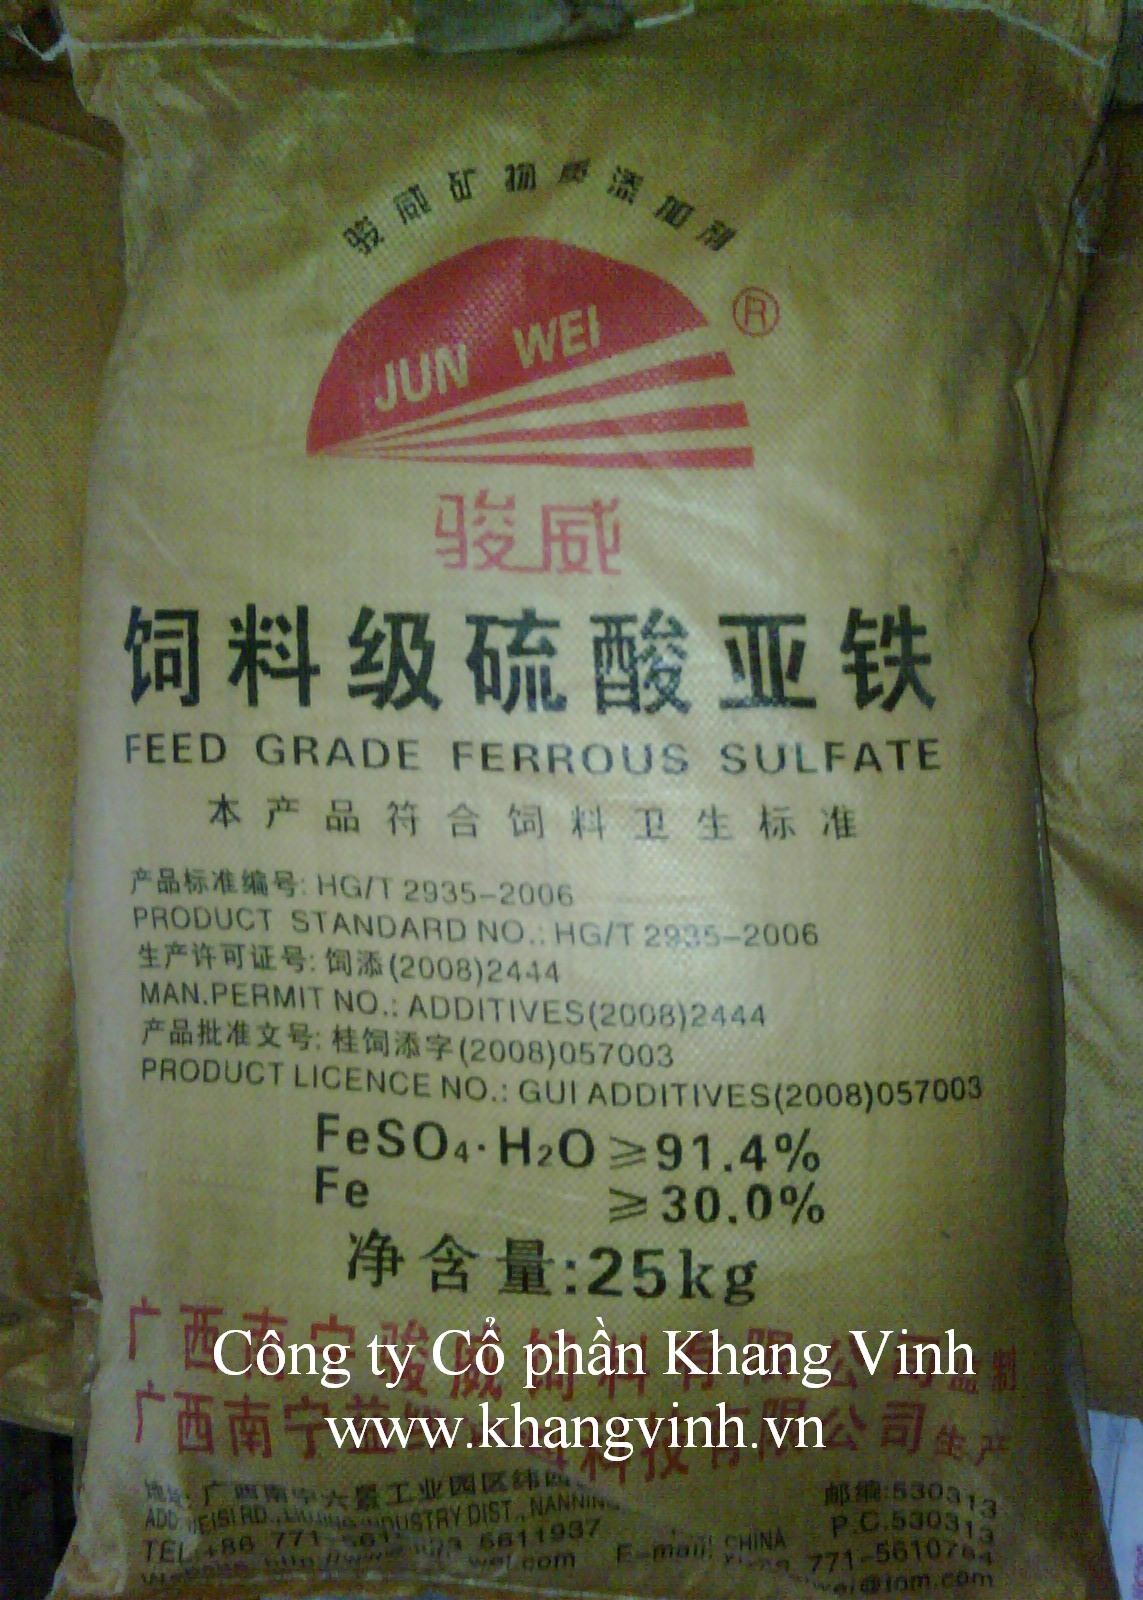 Feed grade ferrous sulphate